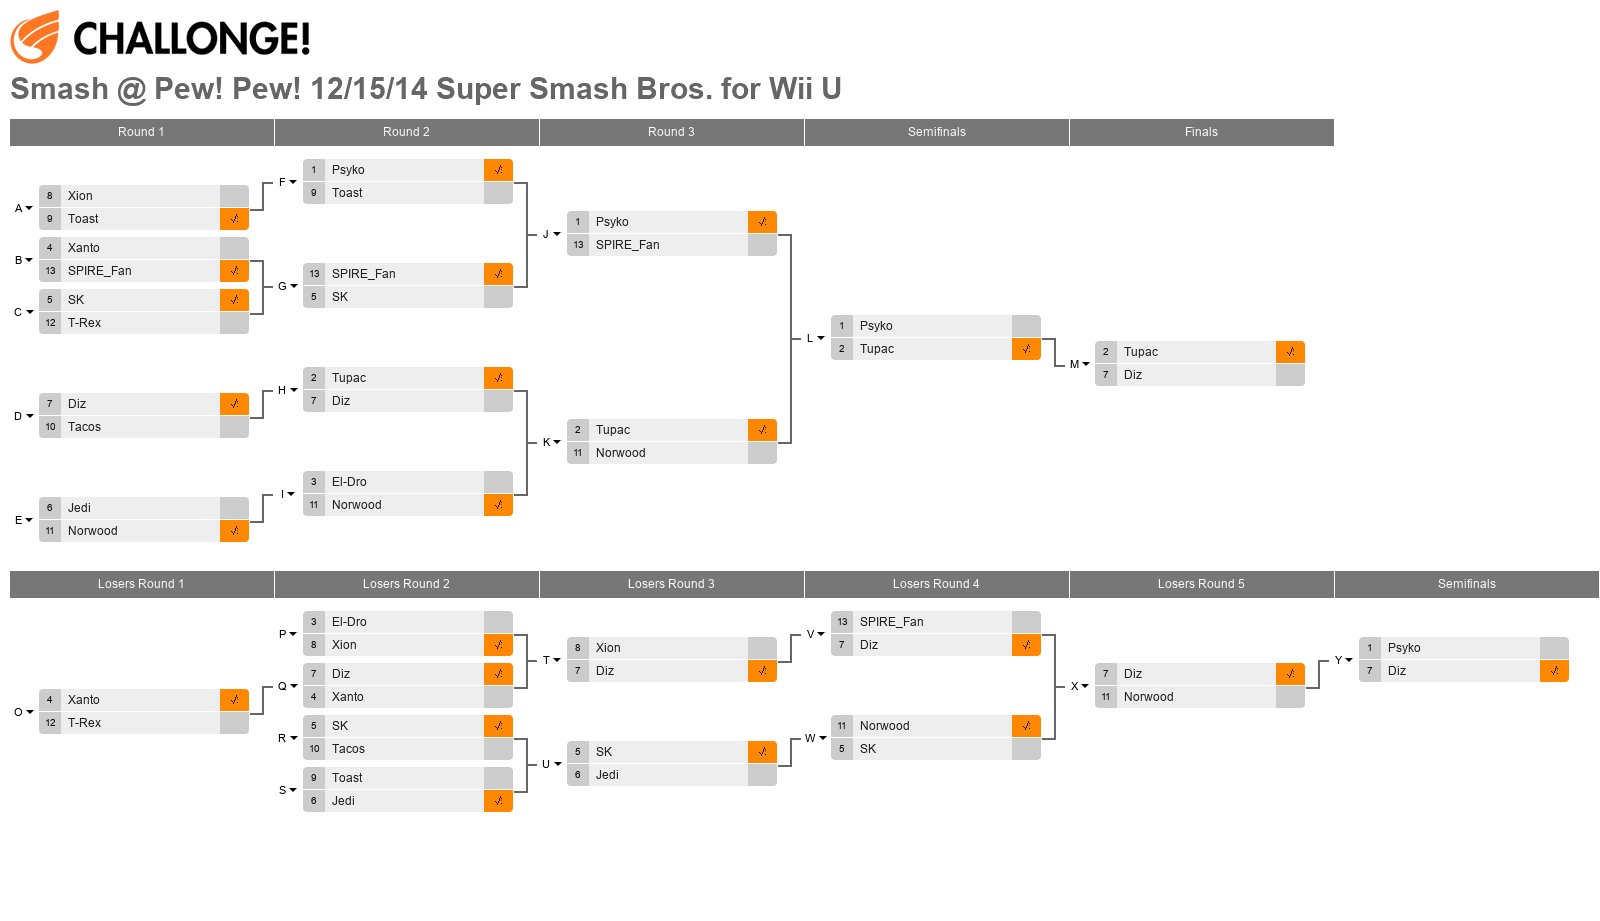 Smash @ Pew! Pew! 12/15/14 Super Smash Bros. for Wii U